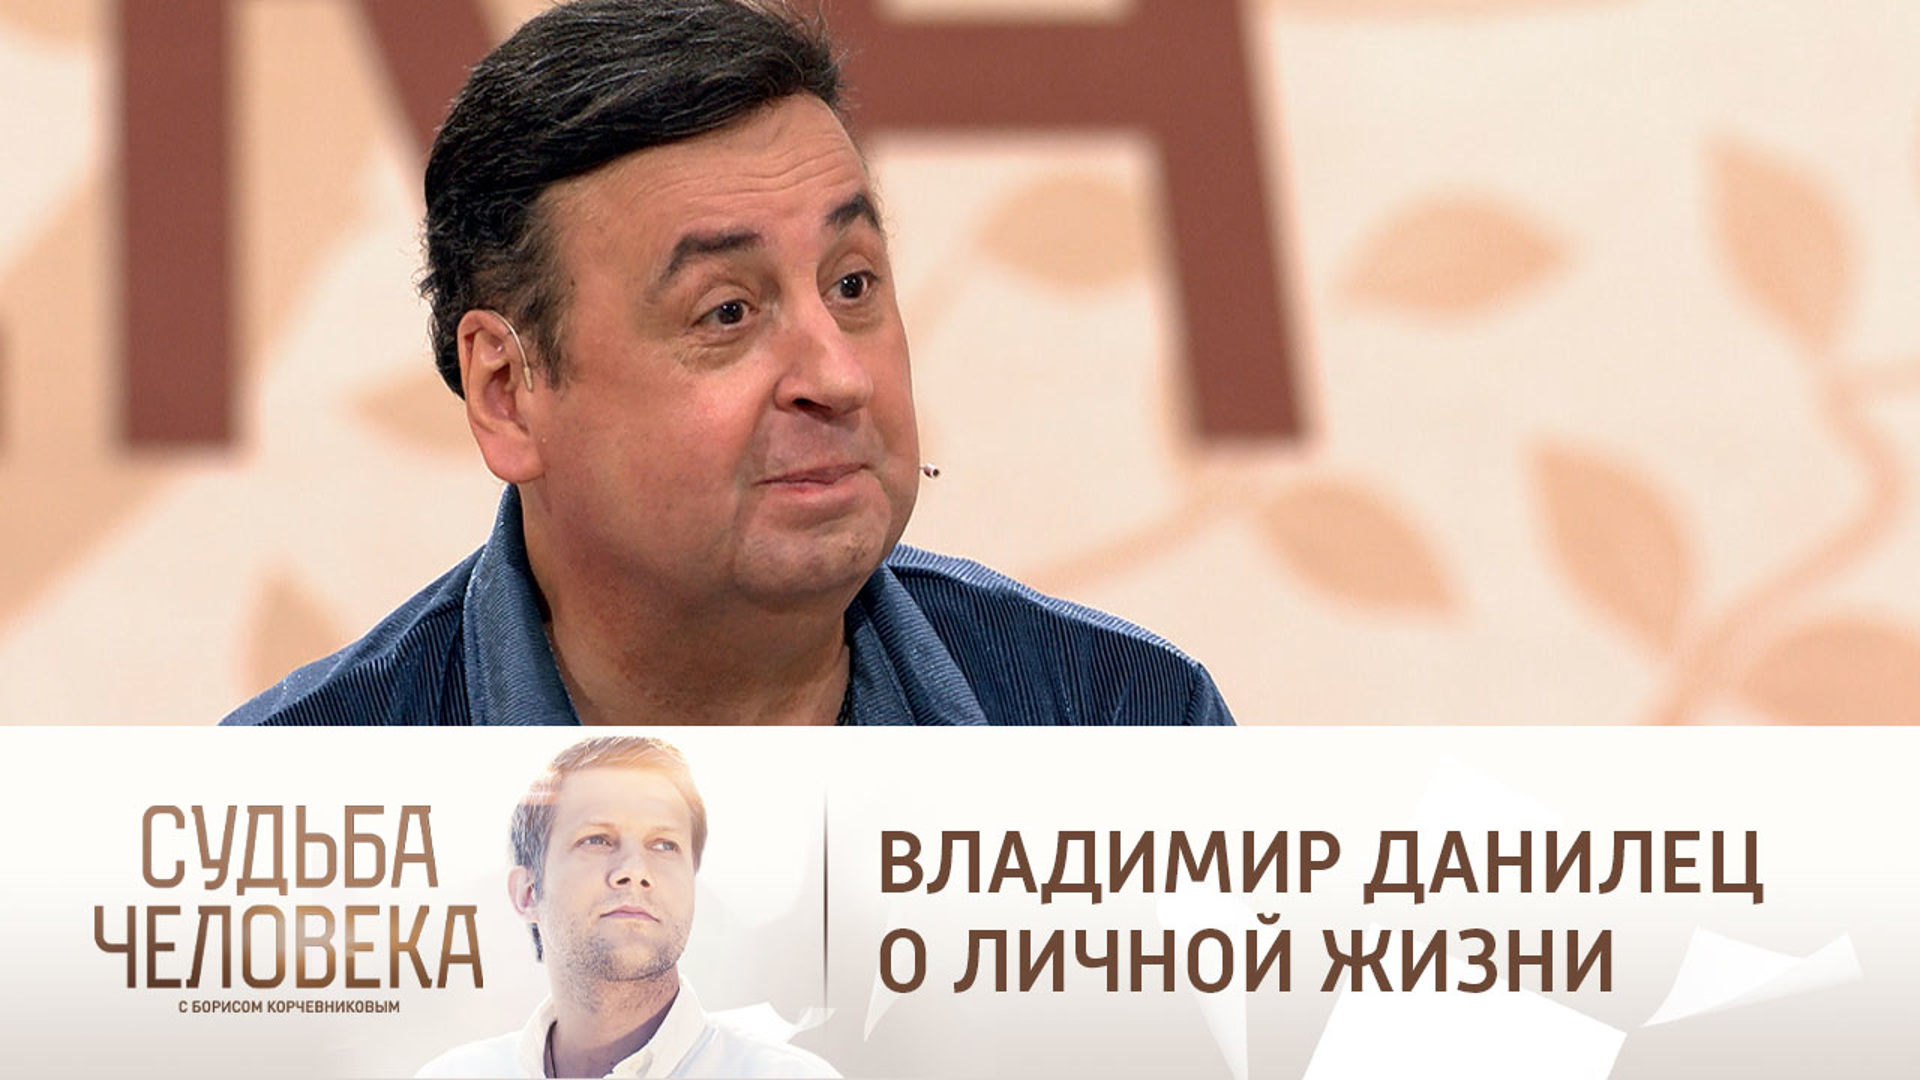 Судьба человека с Борисом Корчевниковым выпуск 23.01.2019